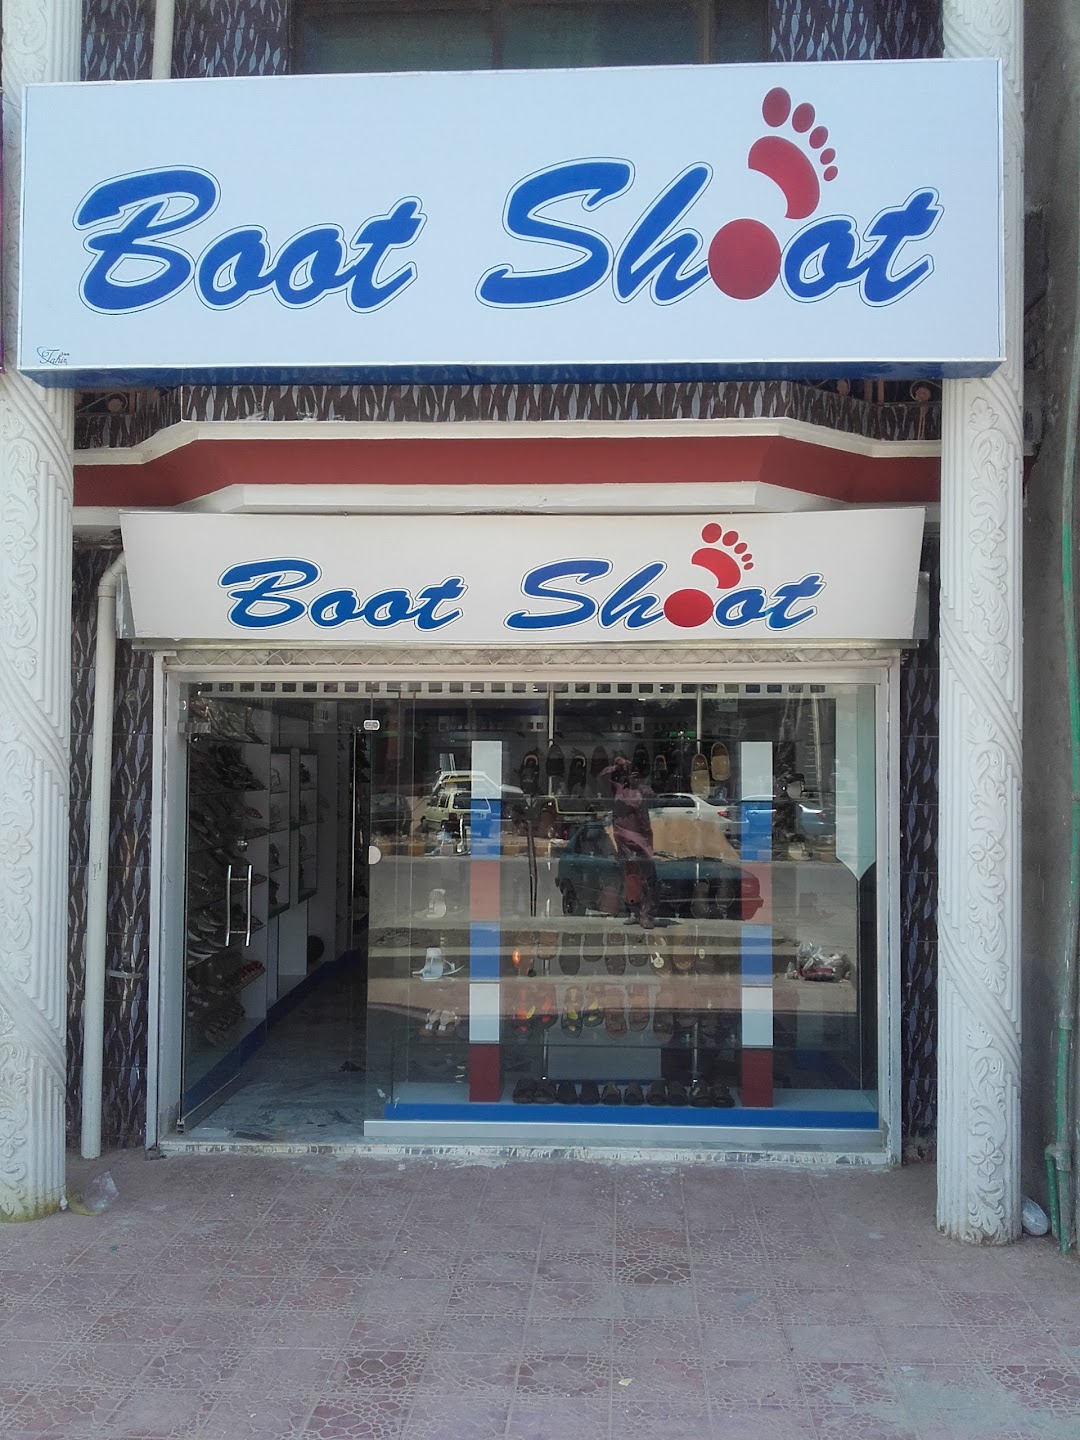 Boot Shoot